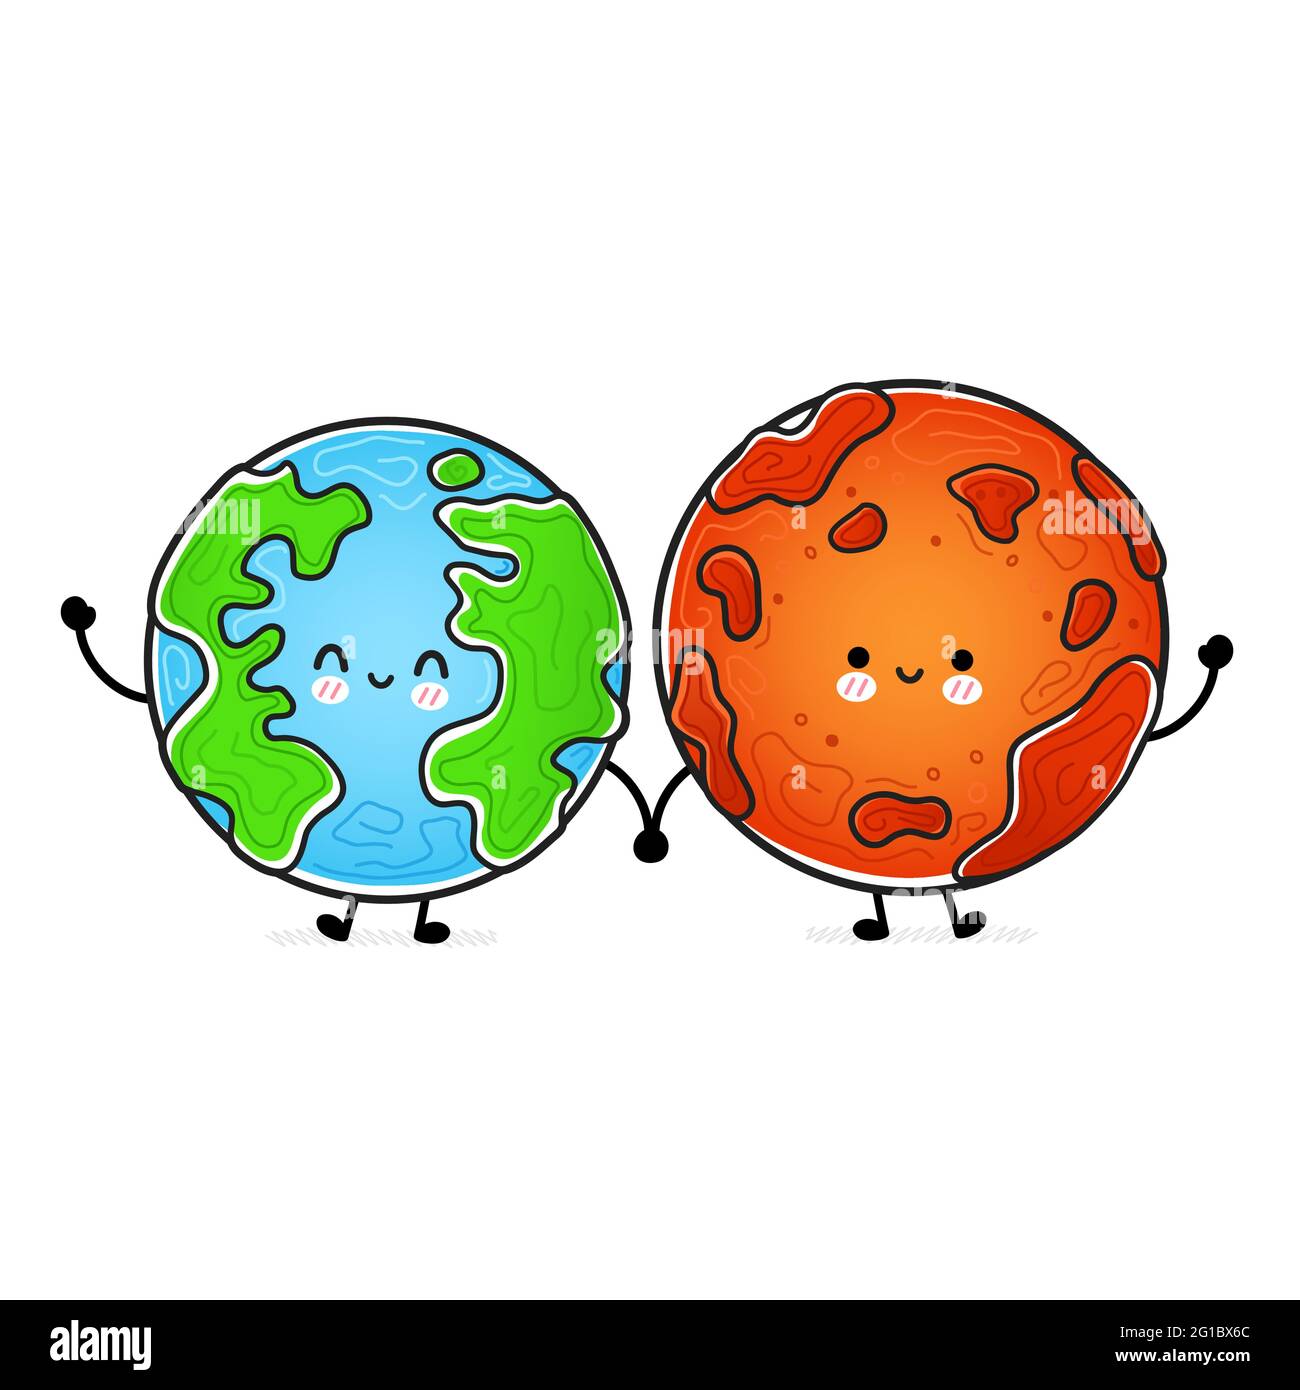 Nette lustige glücklich Mars und Erde Planeten. Vektor Hand gezeichnet Cartoon kawaii Charakter Illustration Symbol. Isoliert auf weißem Hintergrund. Weltraumforschung, Mars- und Erdplaneten-Charakterkonzept Stock Vektor